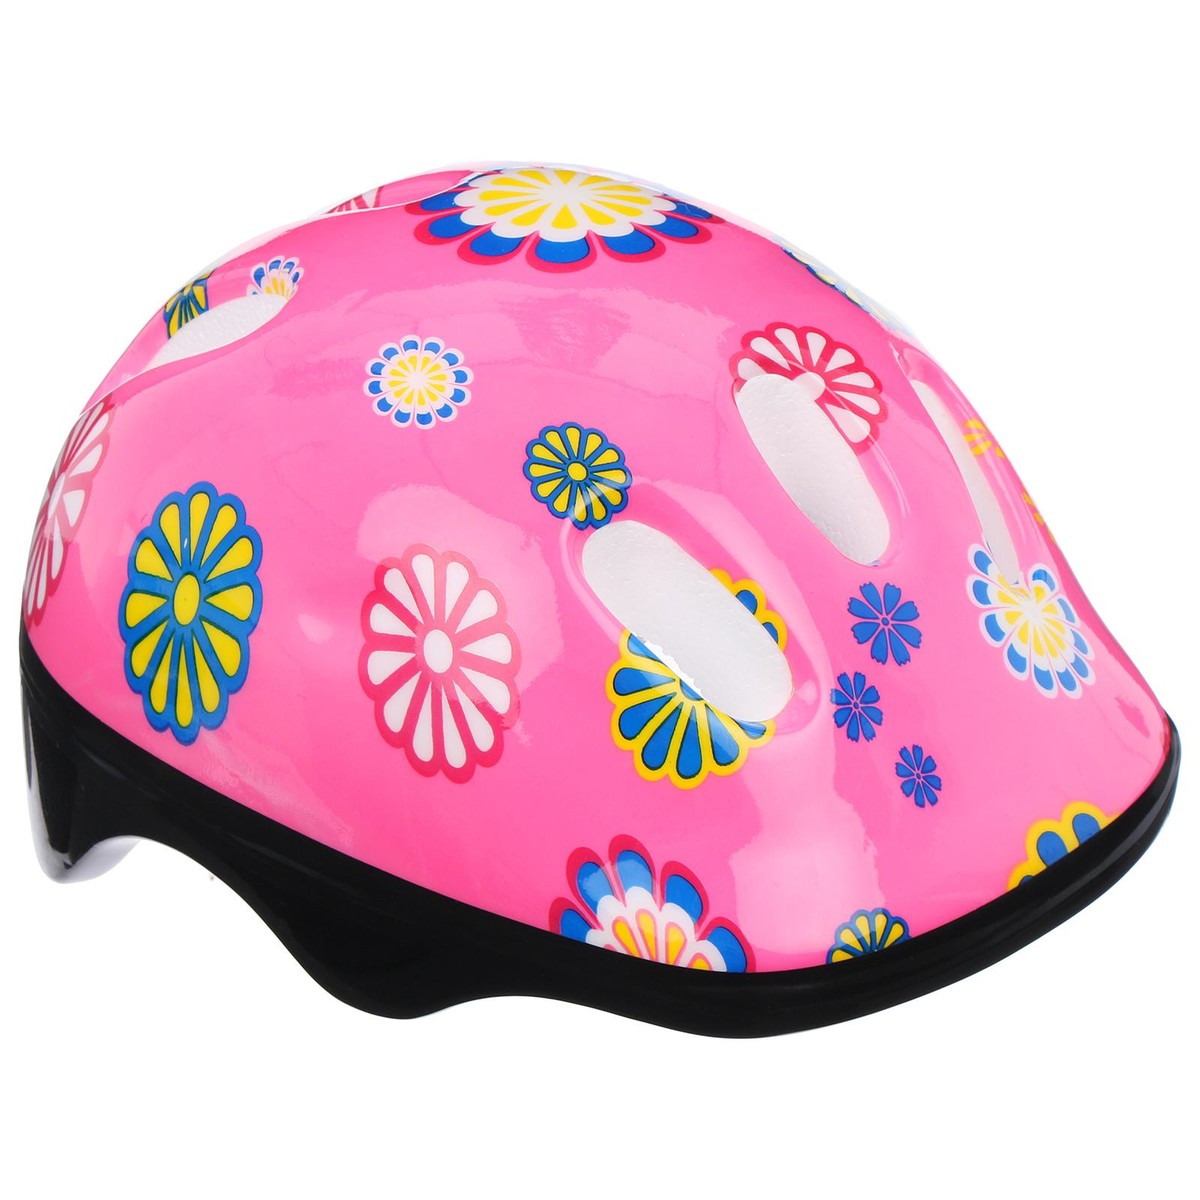 Шлем защитный детский onlytop ot-sh6, обхват 52-54 см, цвет розовый шлем детский lassie р s цв фиолетовые полосы 718729 4921 s